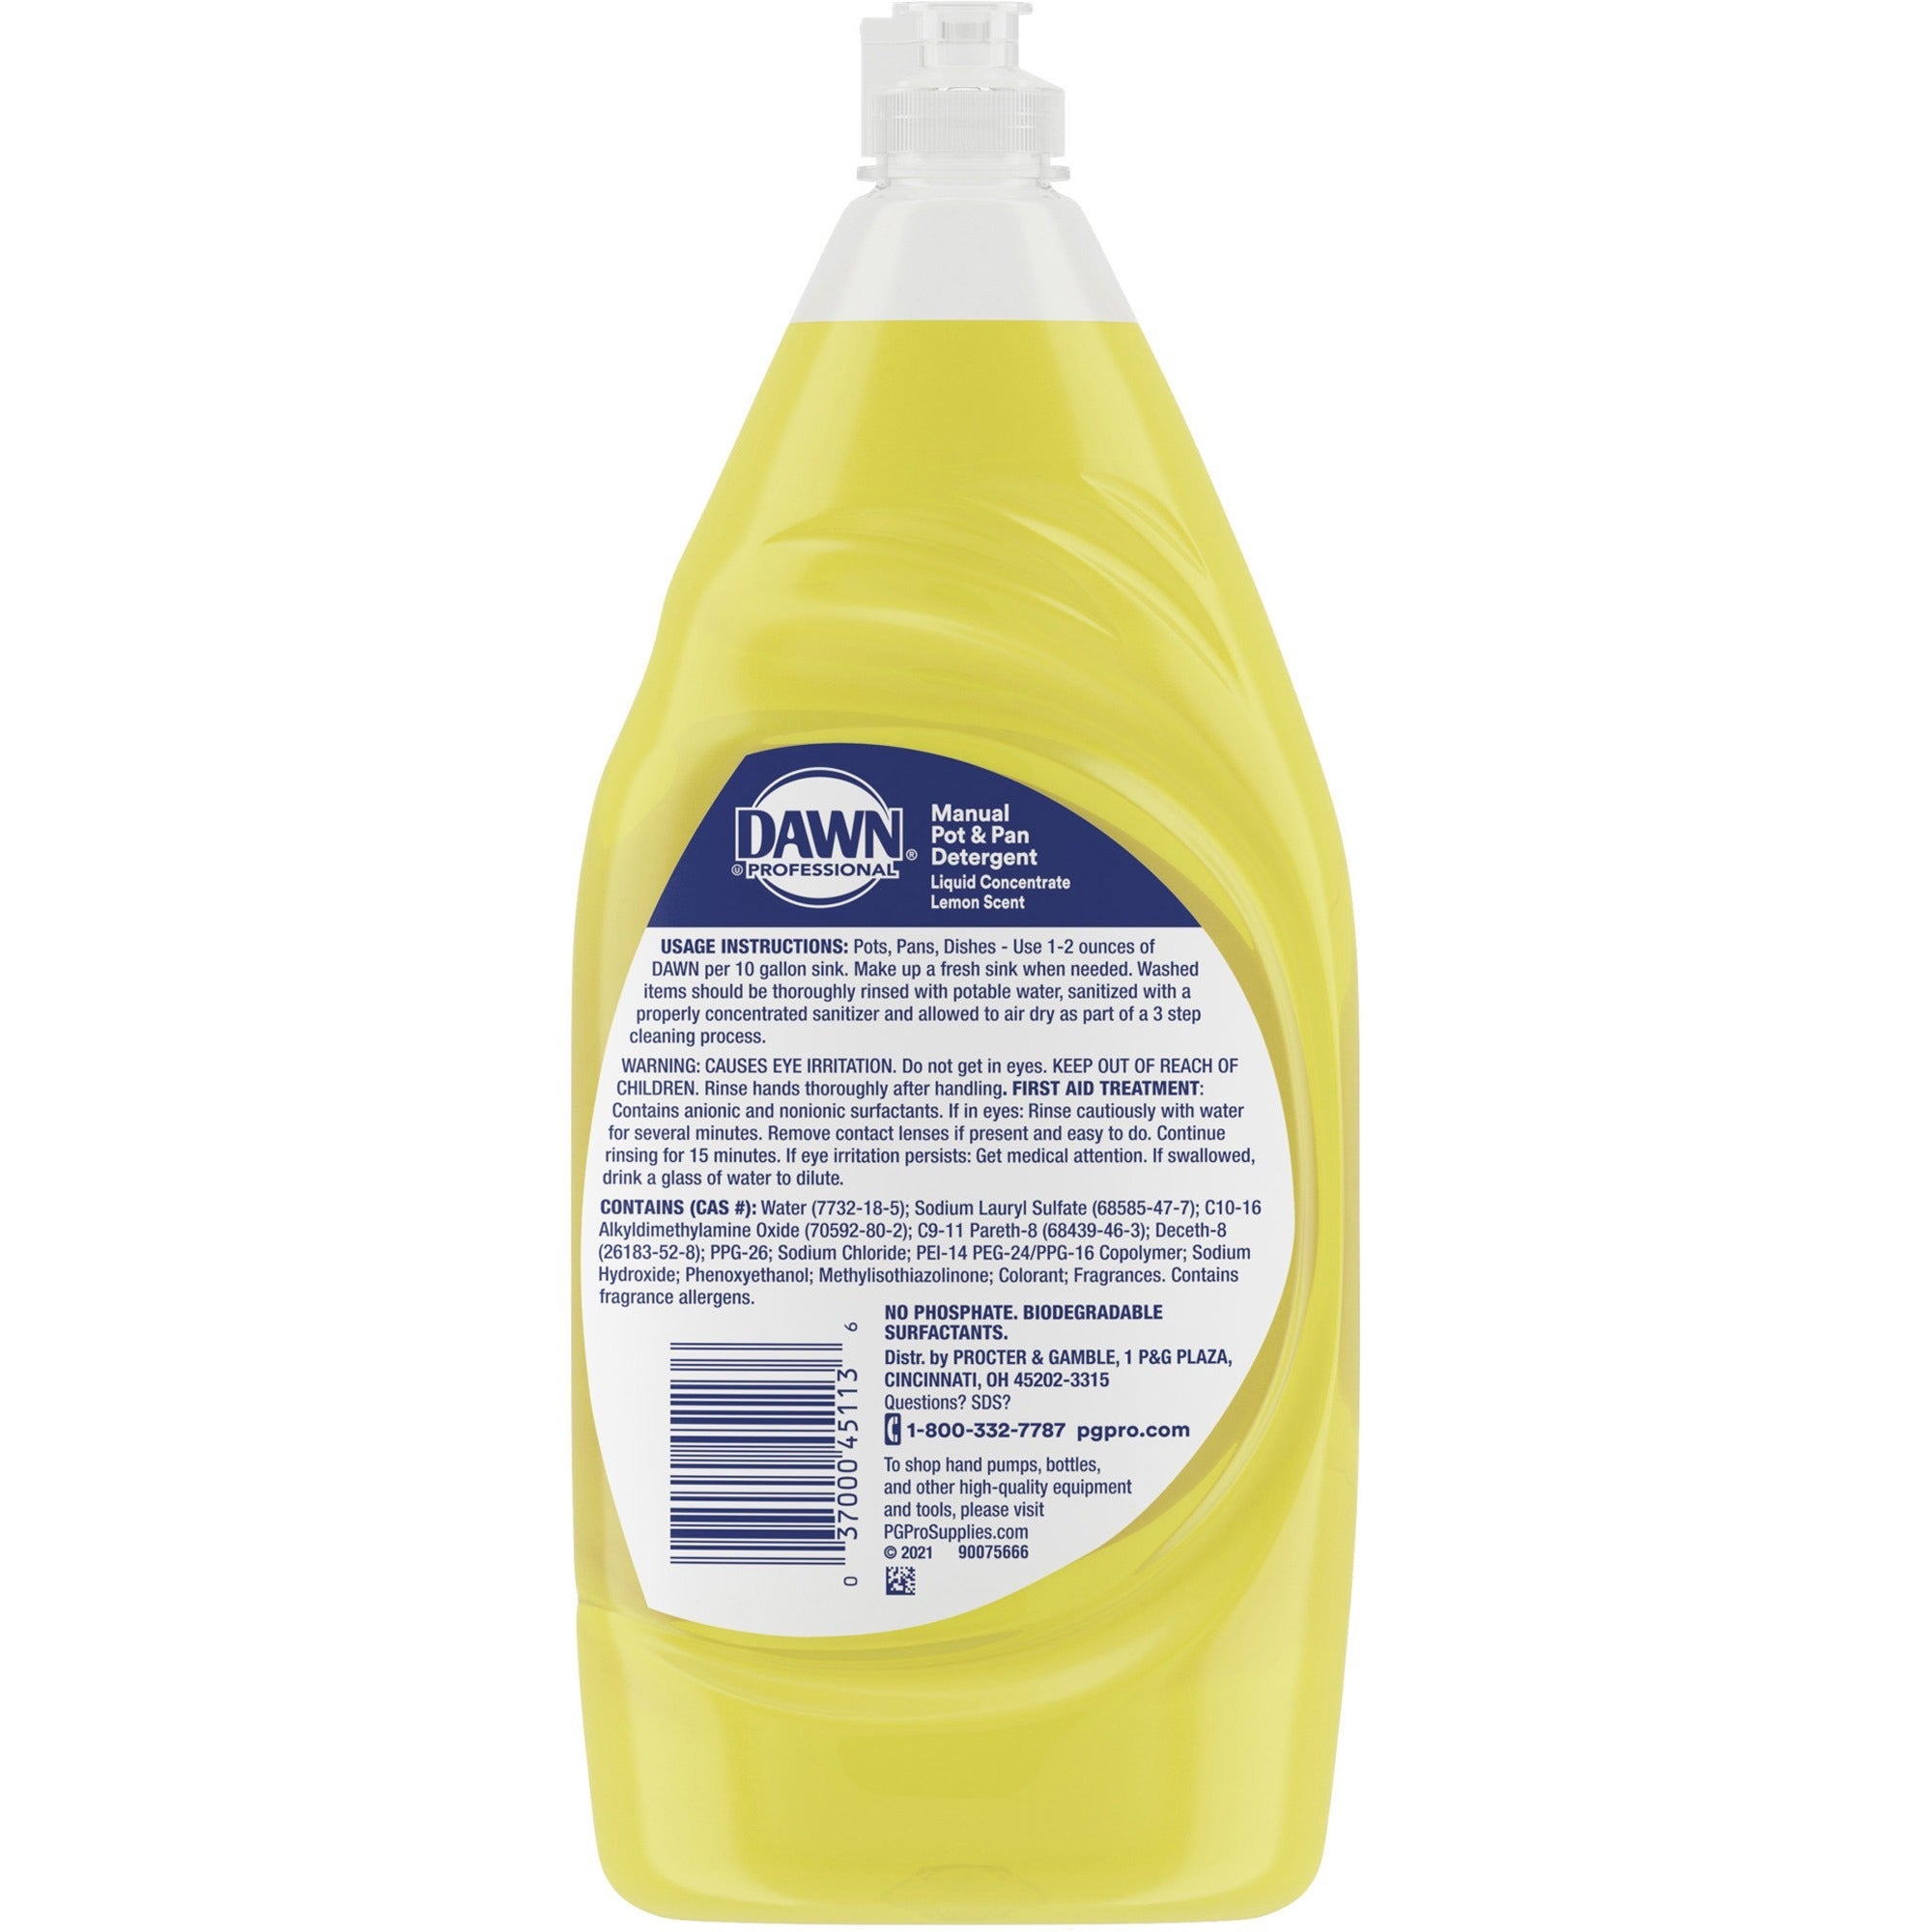 dawn-manual-pot-pan-detergent-concentrate-38-fl-oz-12-quart-lemon-scent-8-carton-yellow_pgc45113ct - 2